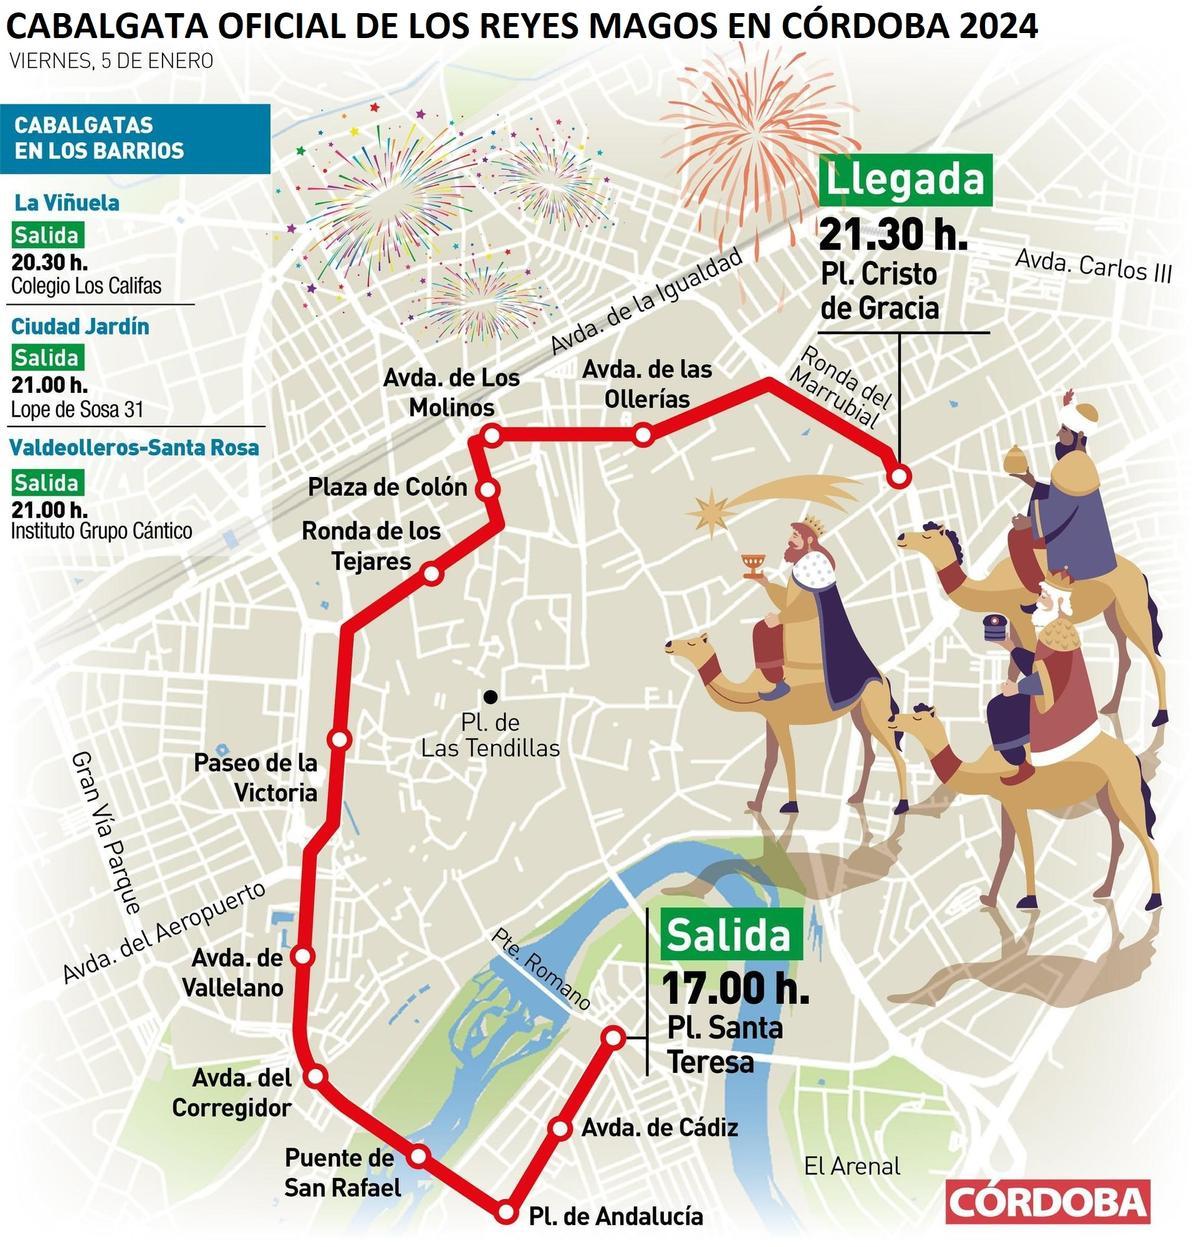 Cabalgata de los Reyes Magos en Córdoba 2024.